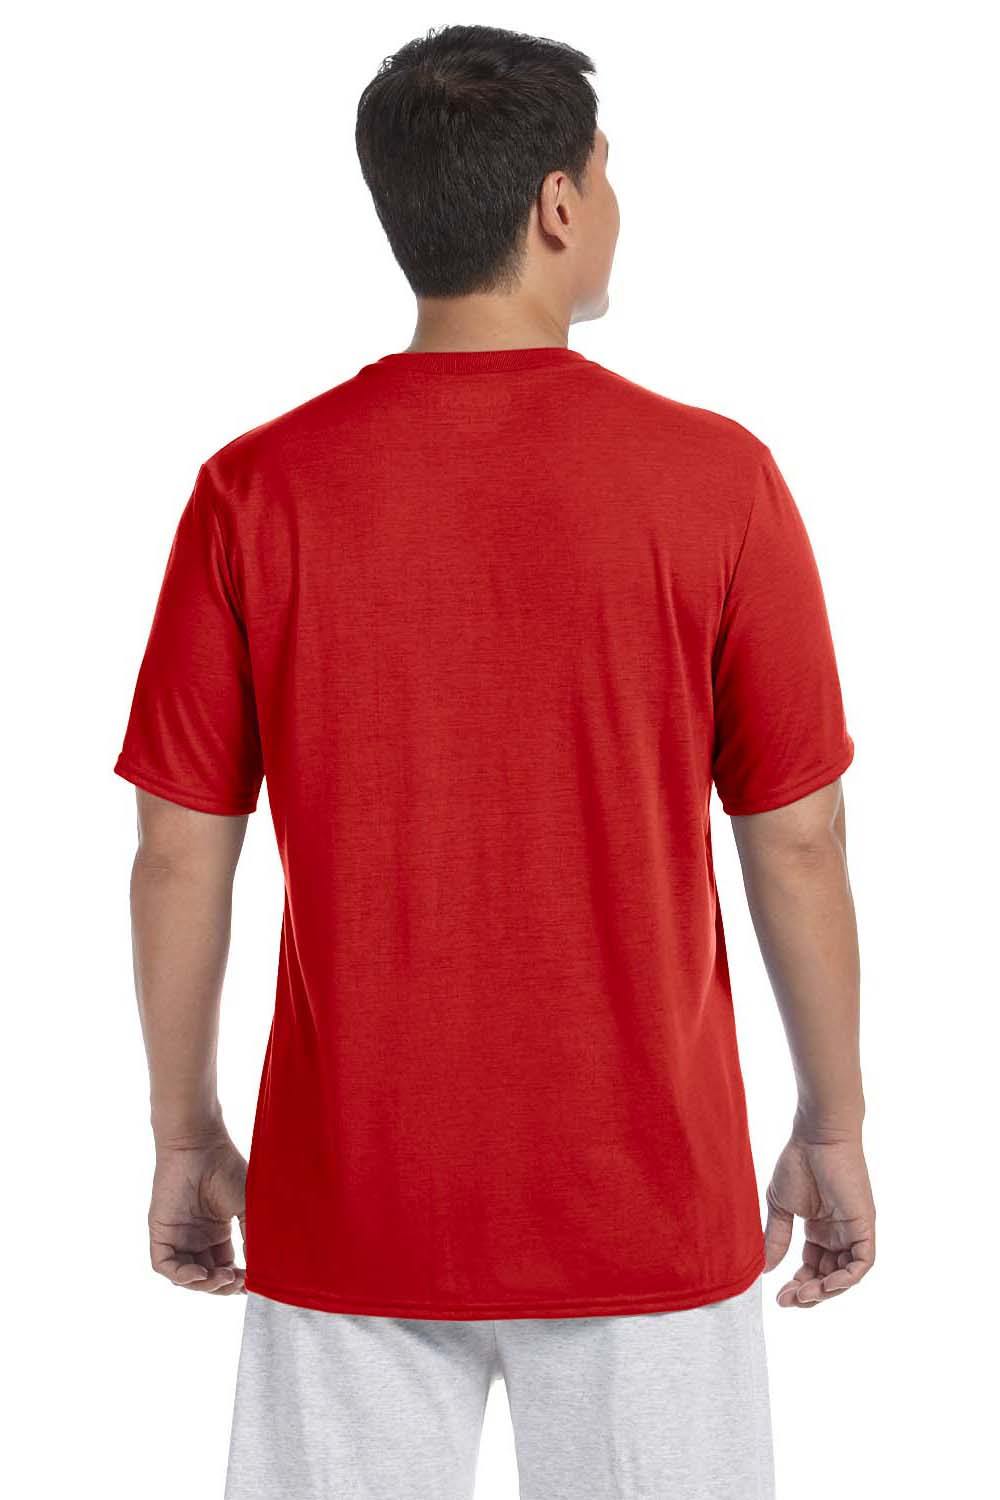 Gildan G420 Mens Performance Jersey Moisture Wicking Short Sleeve Crewneck T-Shirt Red Back